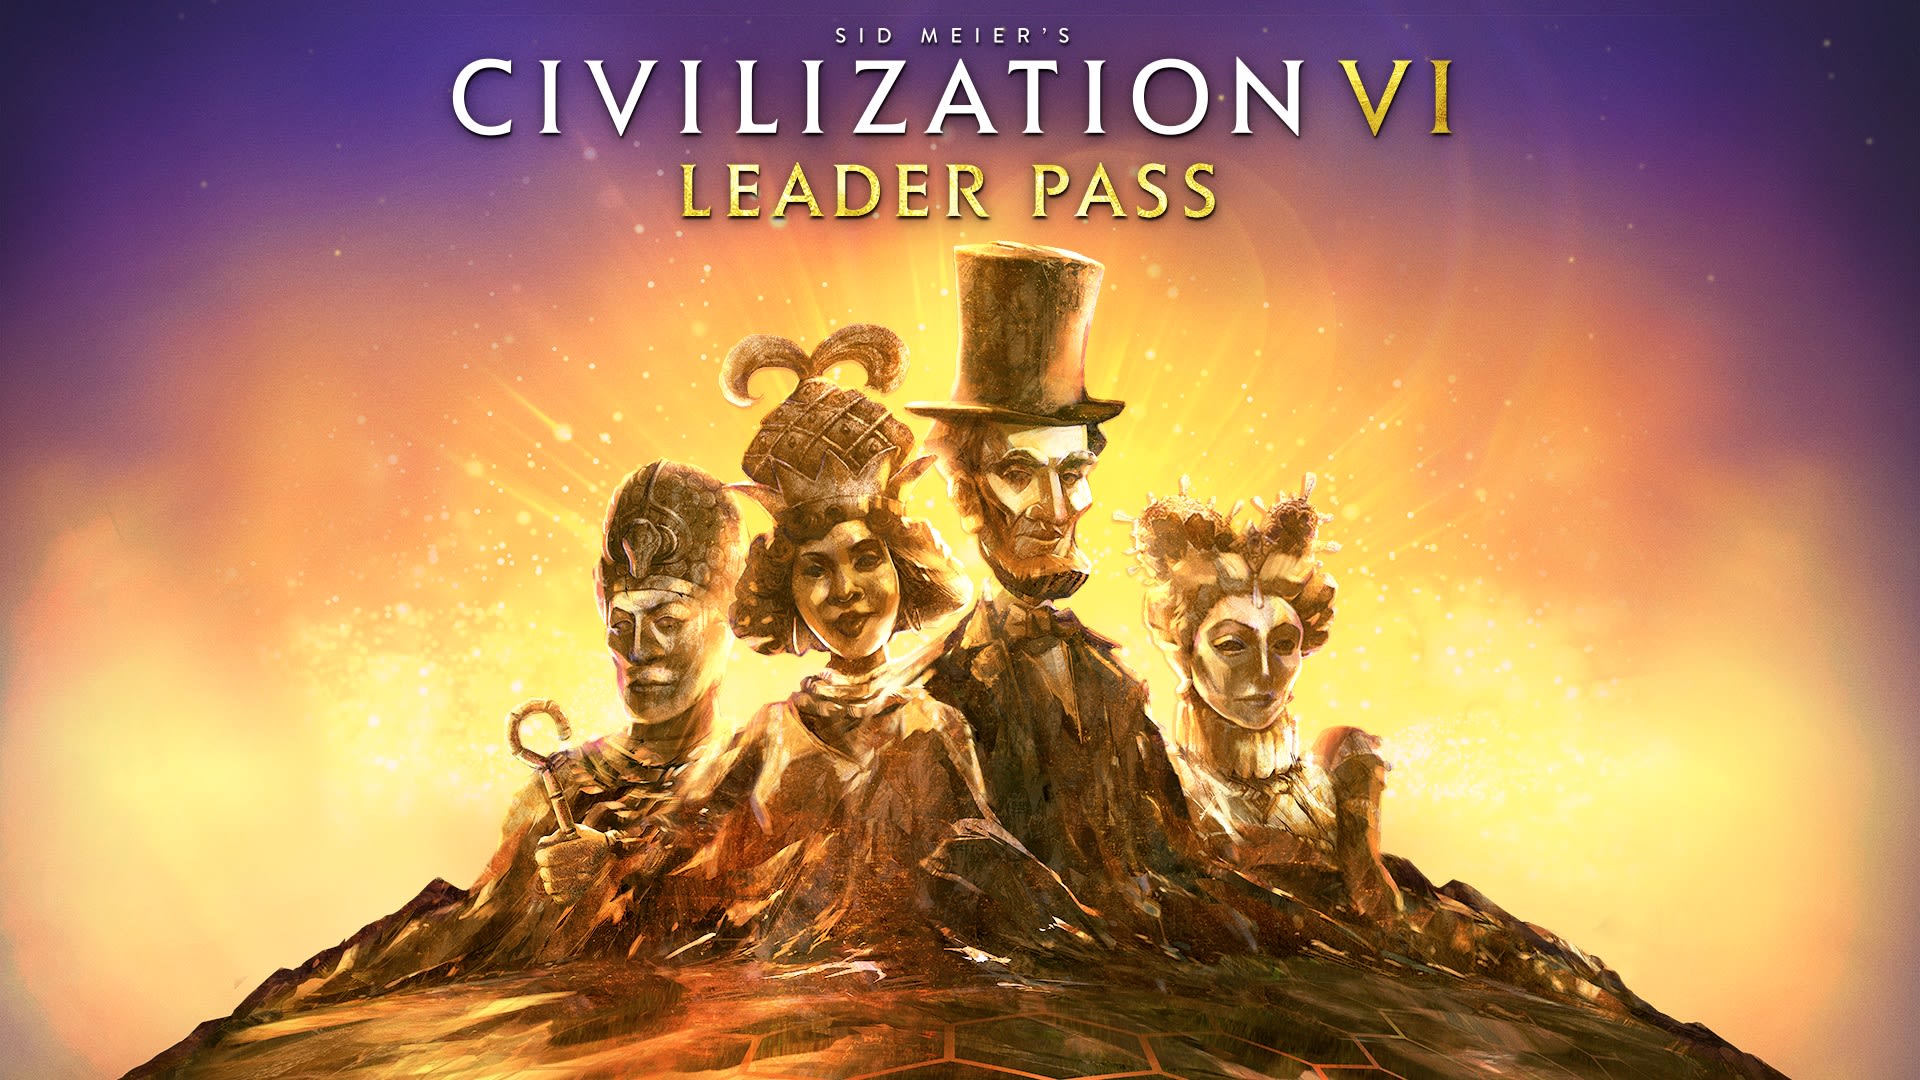 Passe de Líder do Sid Meier’s Civilization® VI